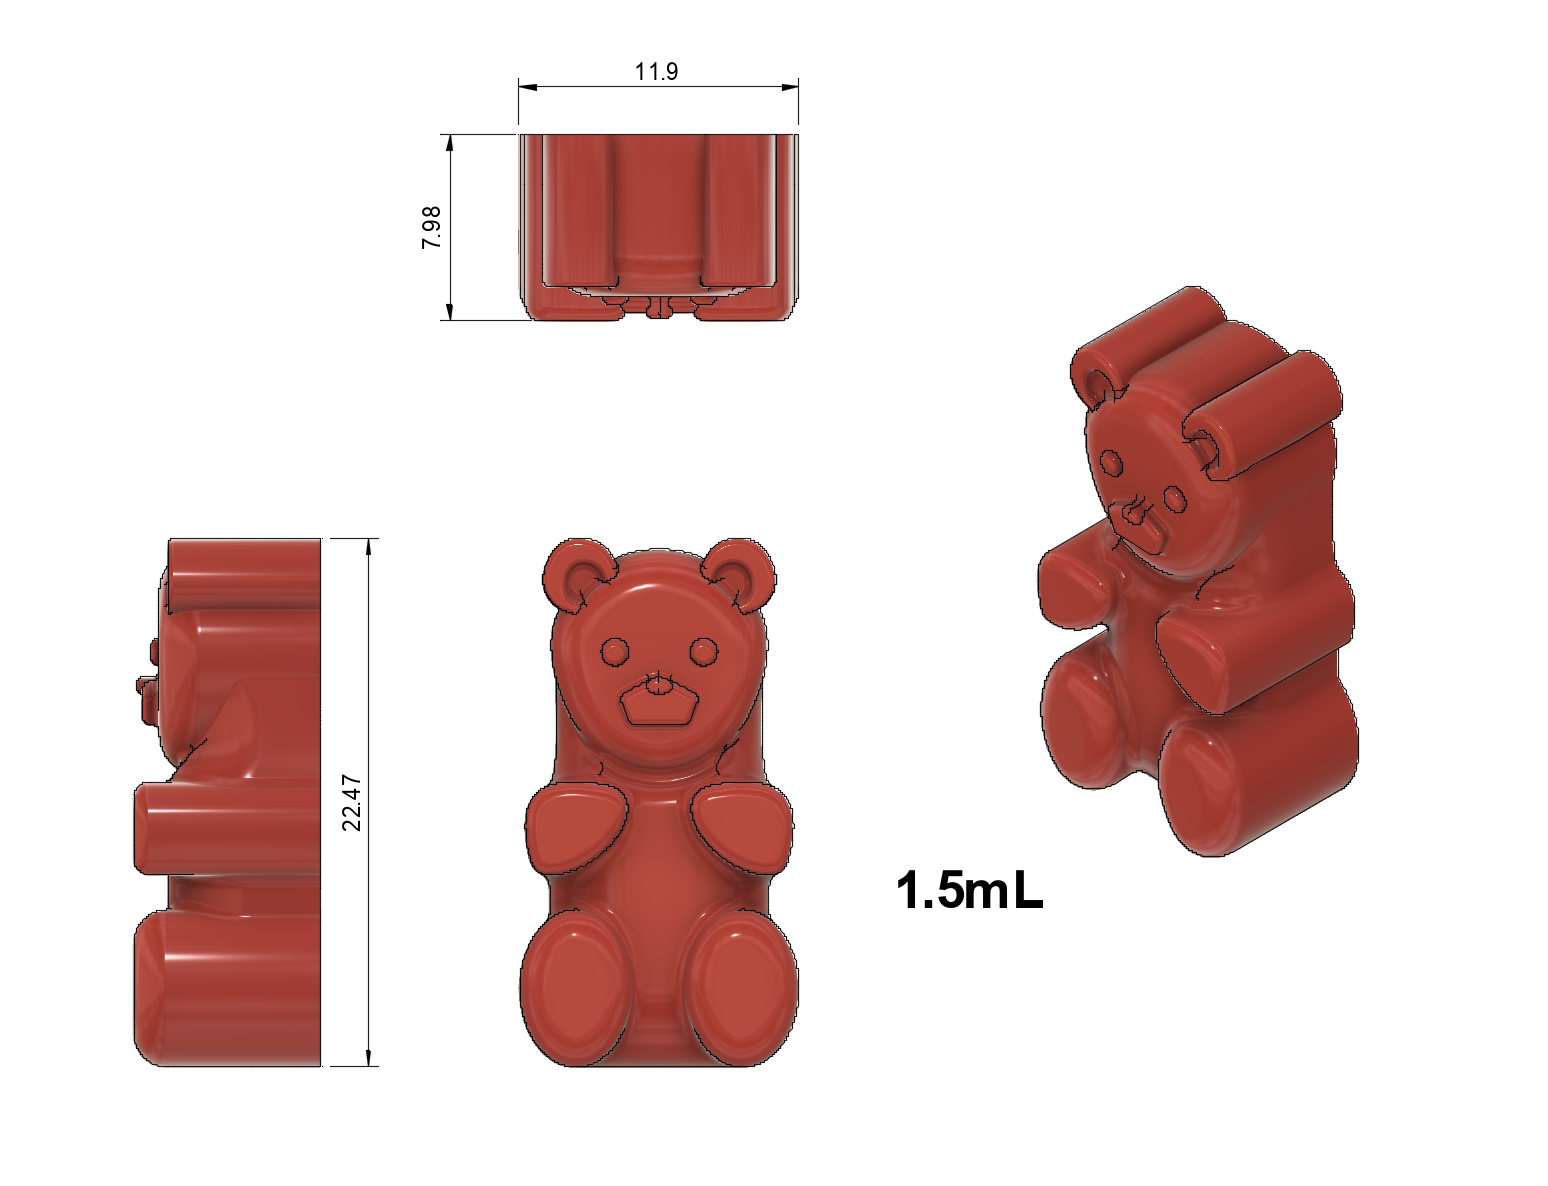 7.5x4.0x2.5 Big Gummy Bear Silicone Mold